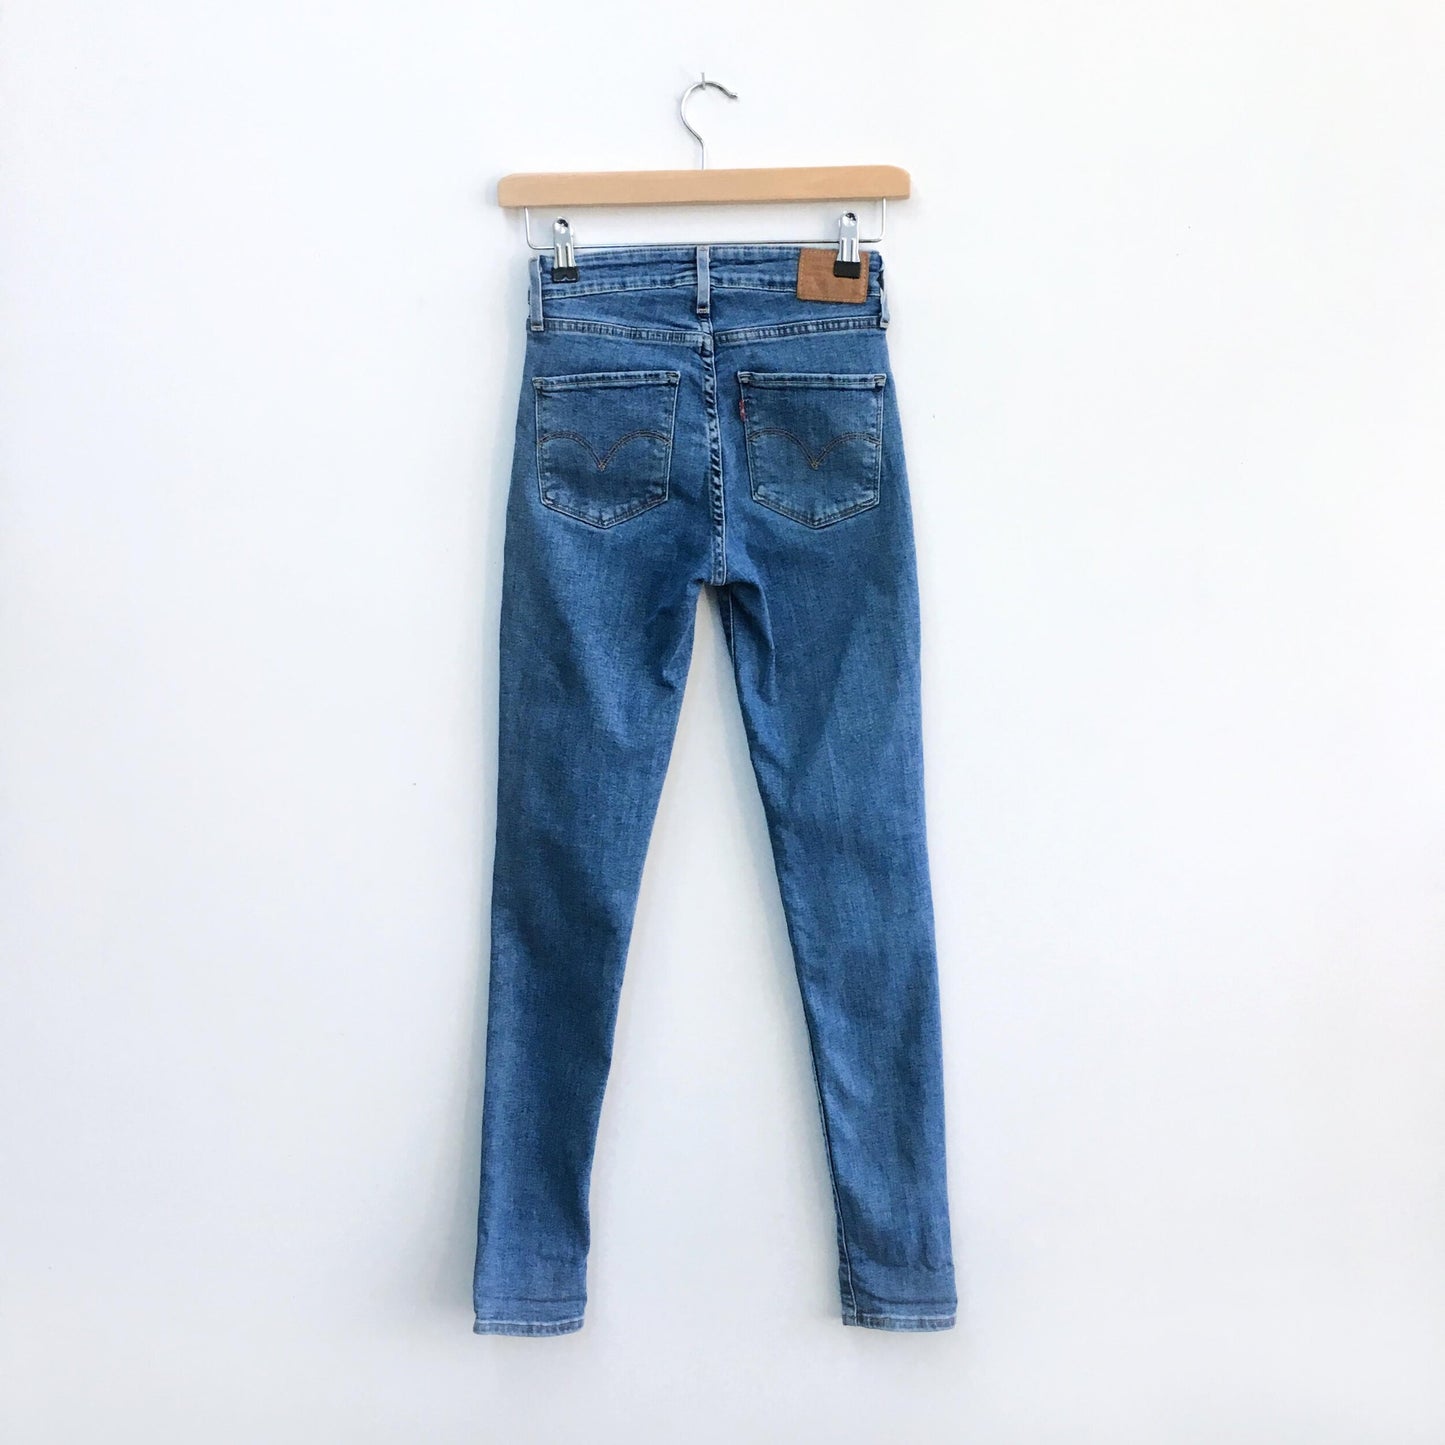 Levi's 721 hi-rise skinny jeans - size 25